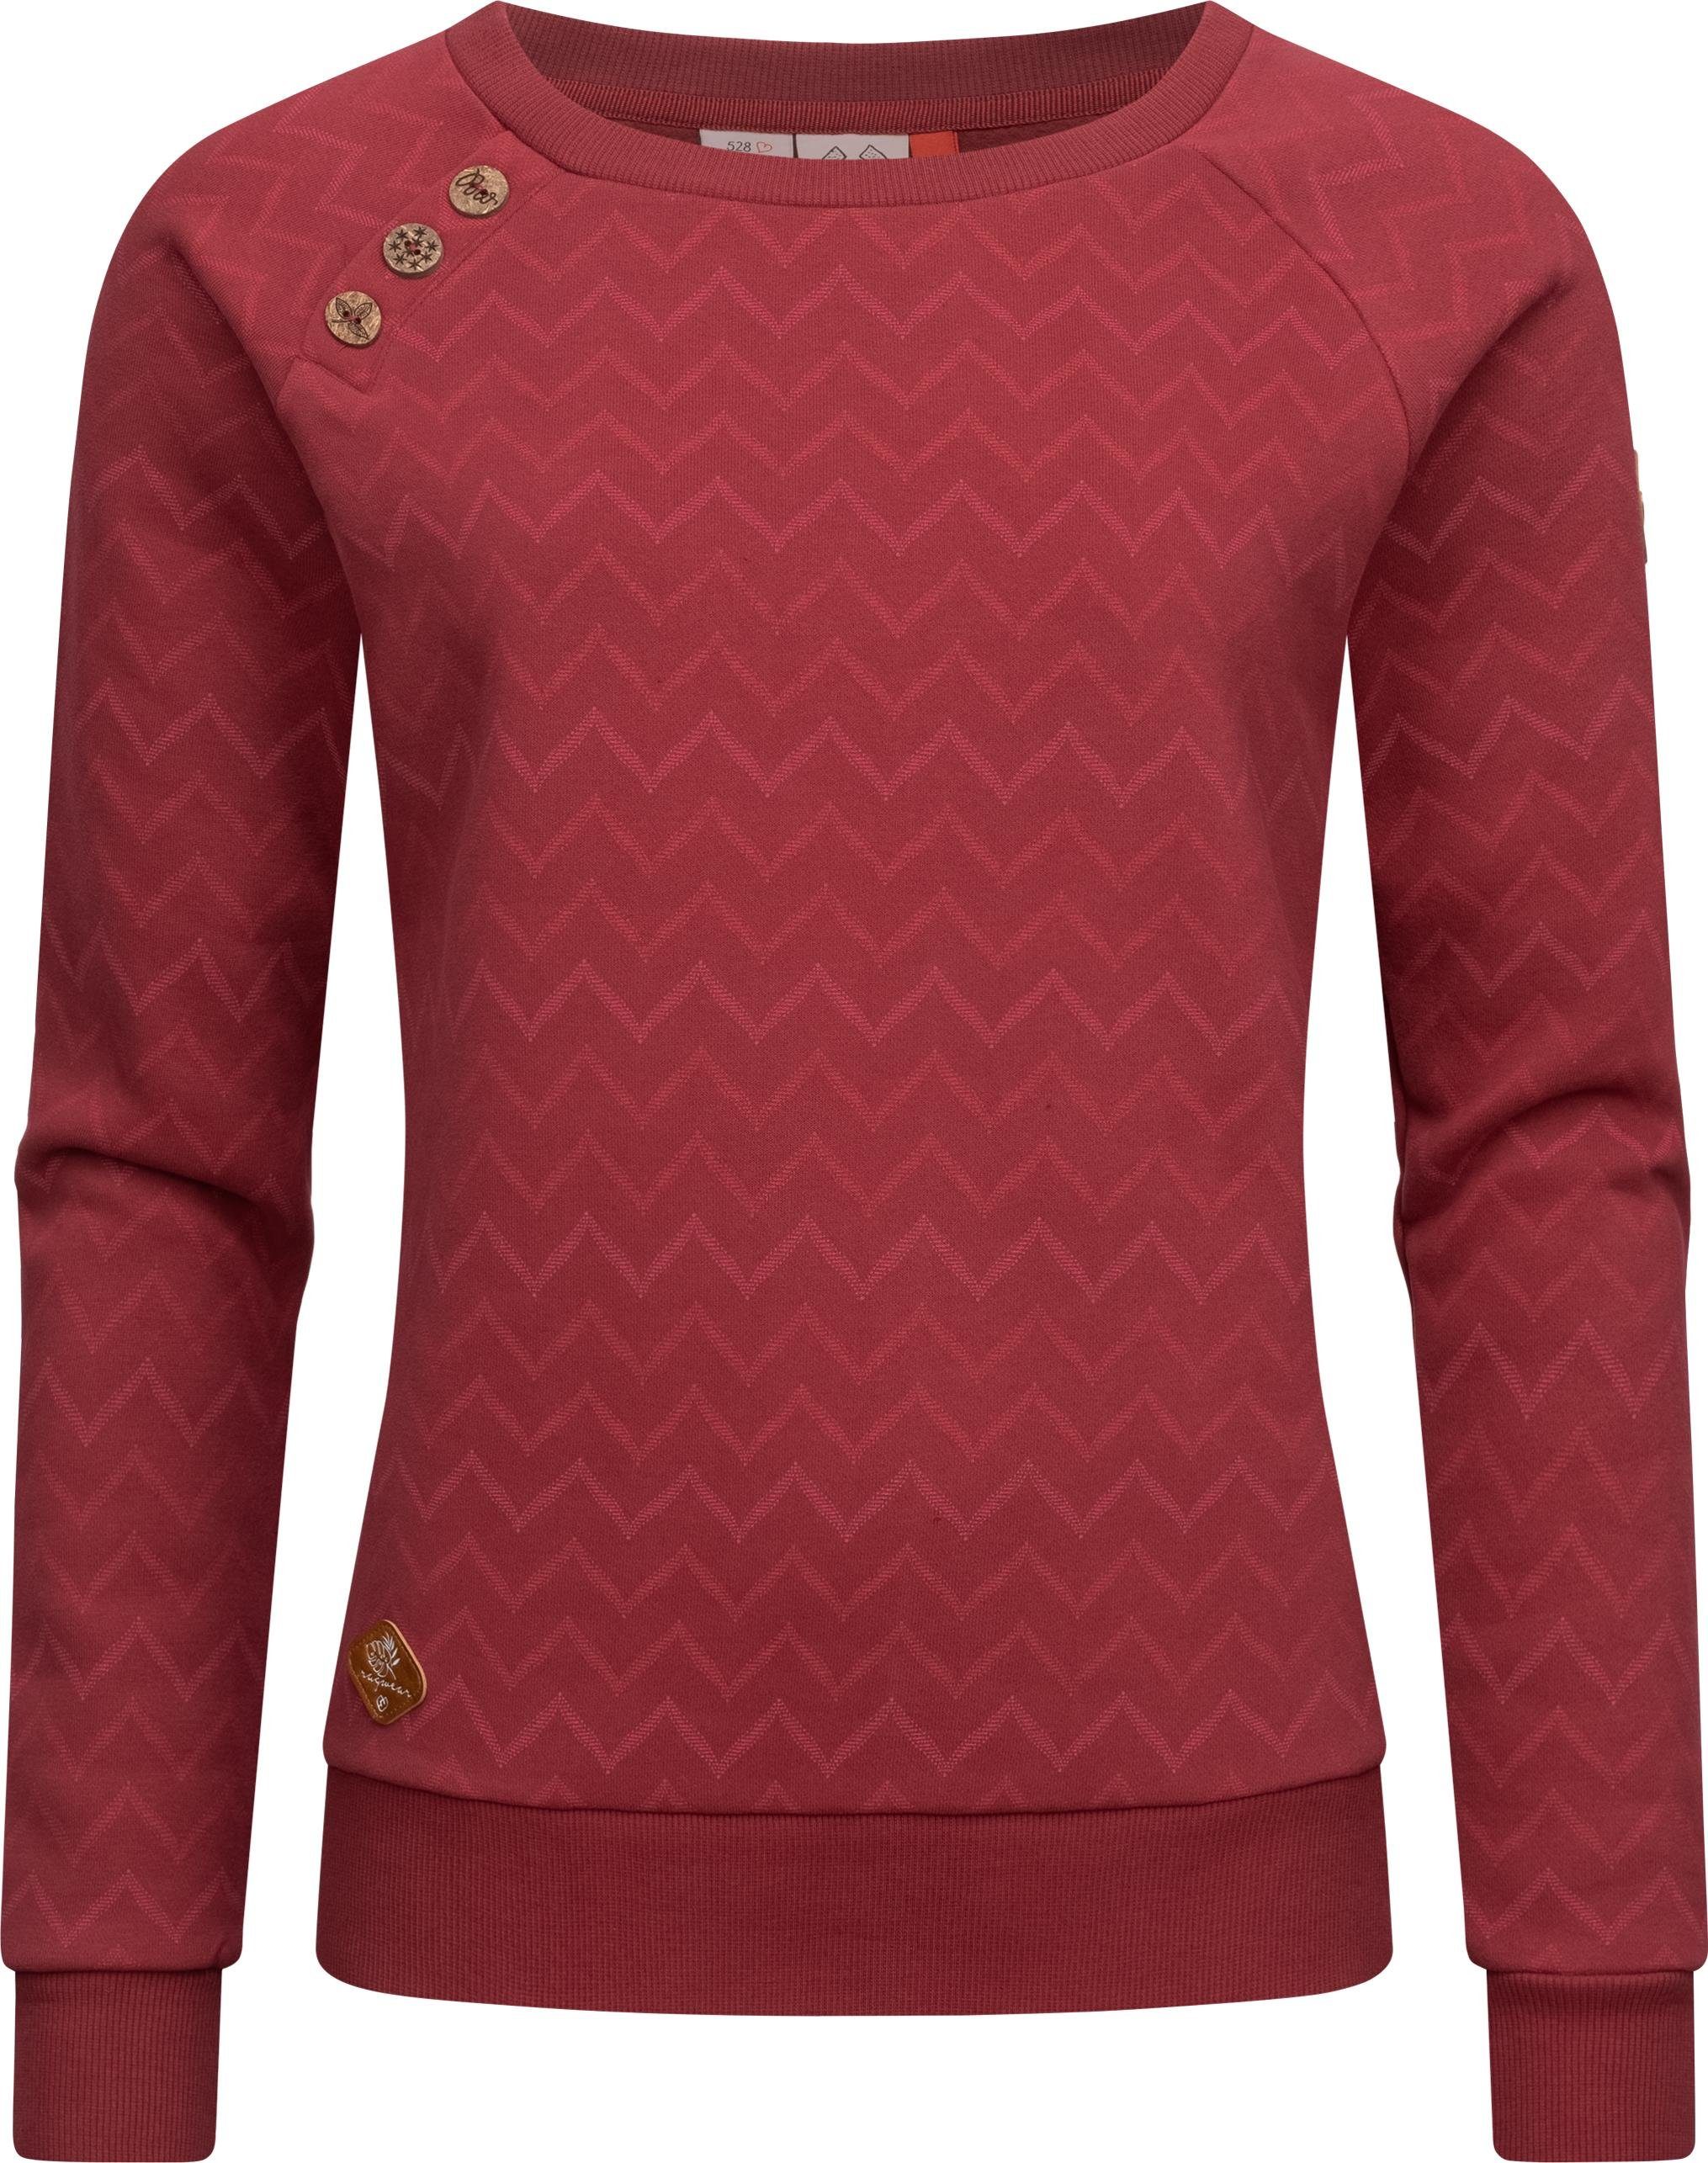 Ragwear Sweater »Daria Zig Zag« stylisches Damen Sweatshirt mit  Zick-Zack-Muster online kaufen | OTTO